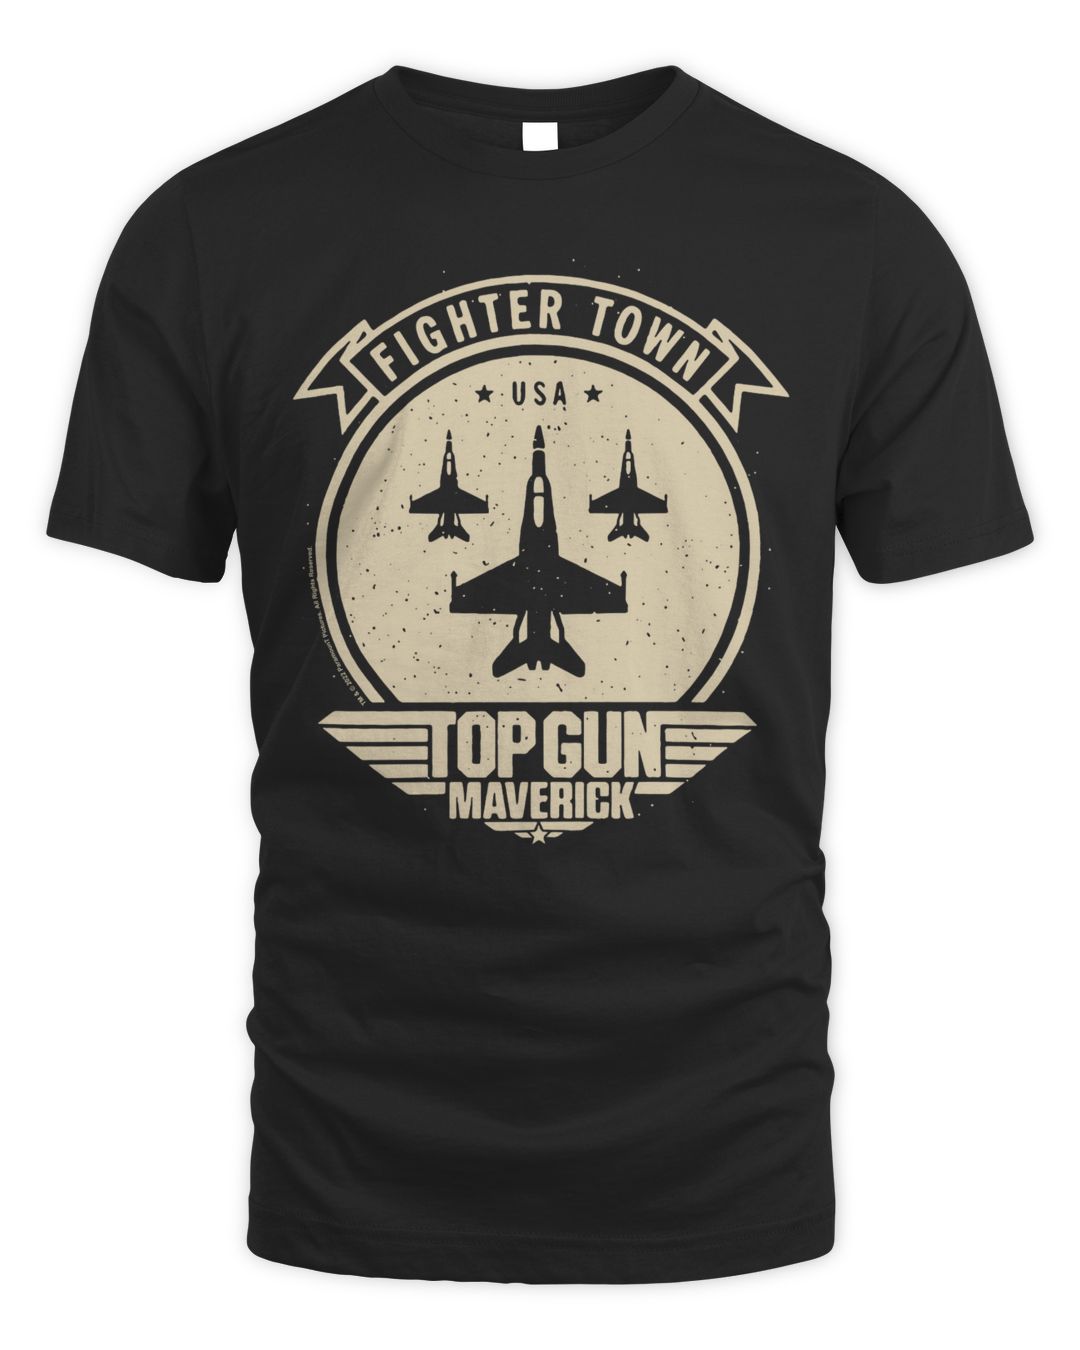 Top Gun Maverick Merch Fighter Town Shirt